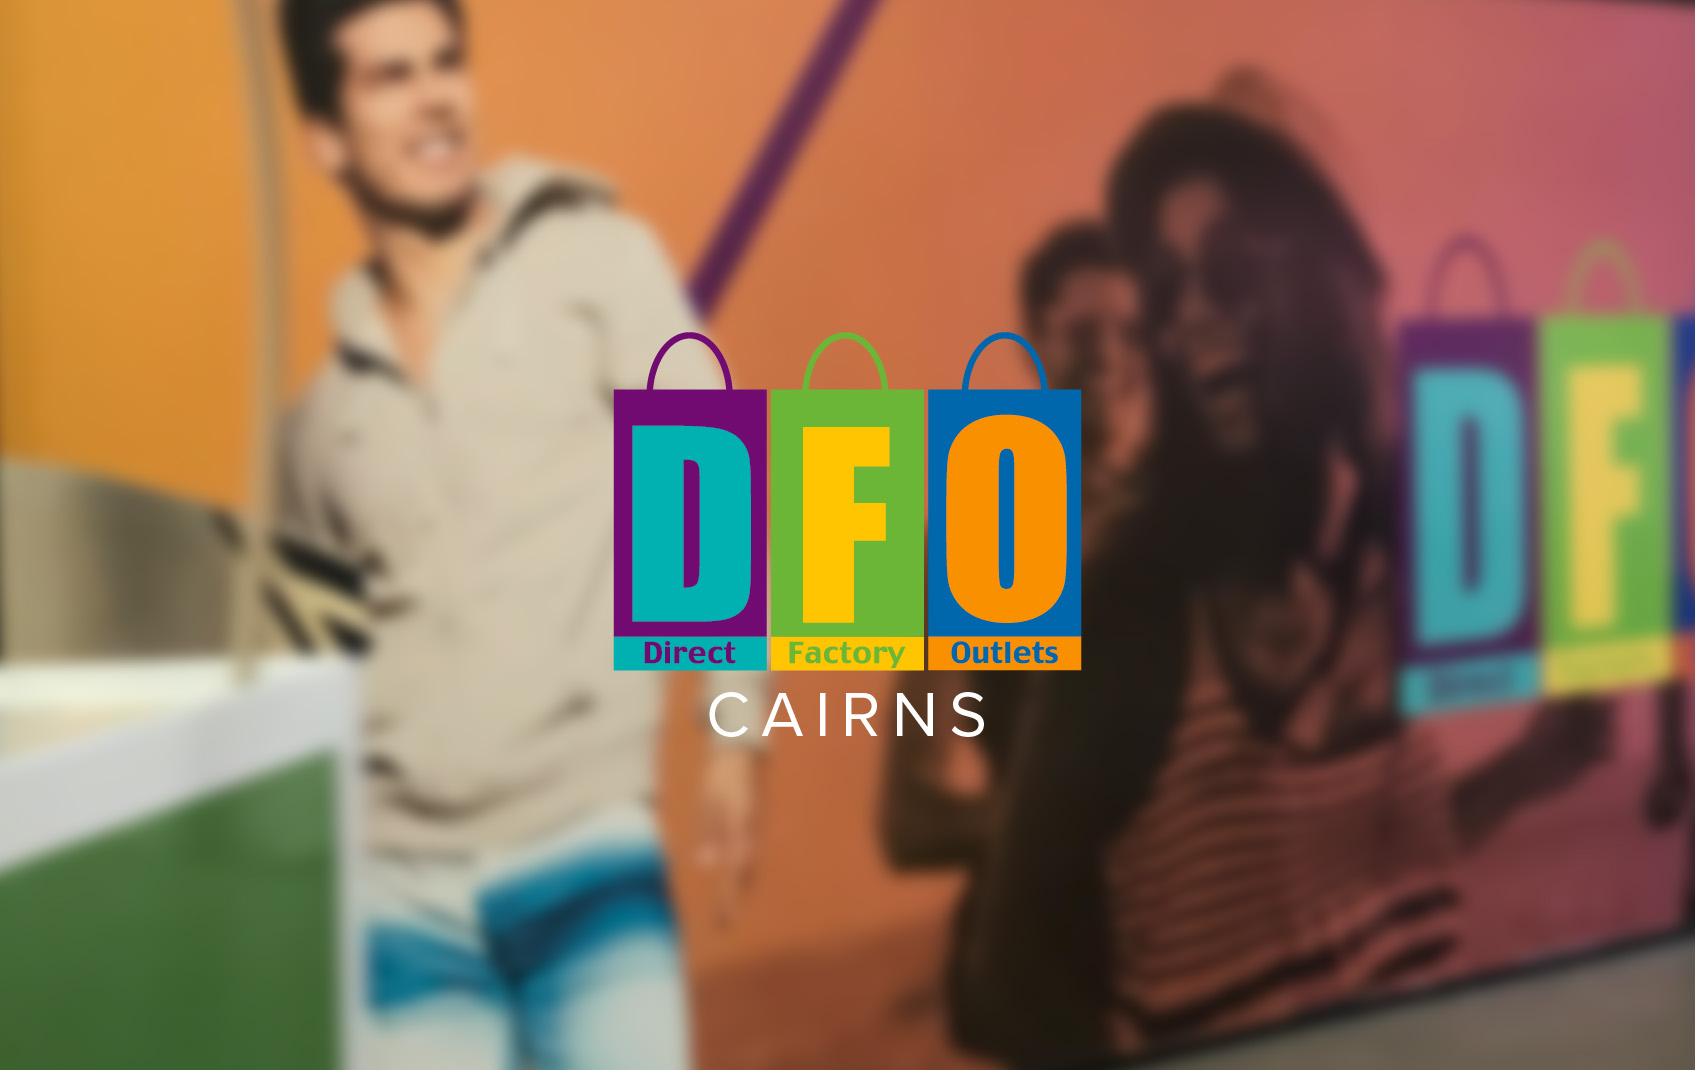 DFO Cairns